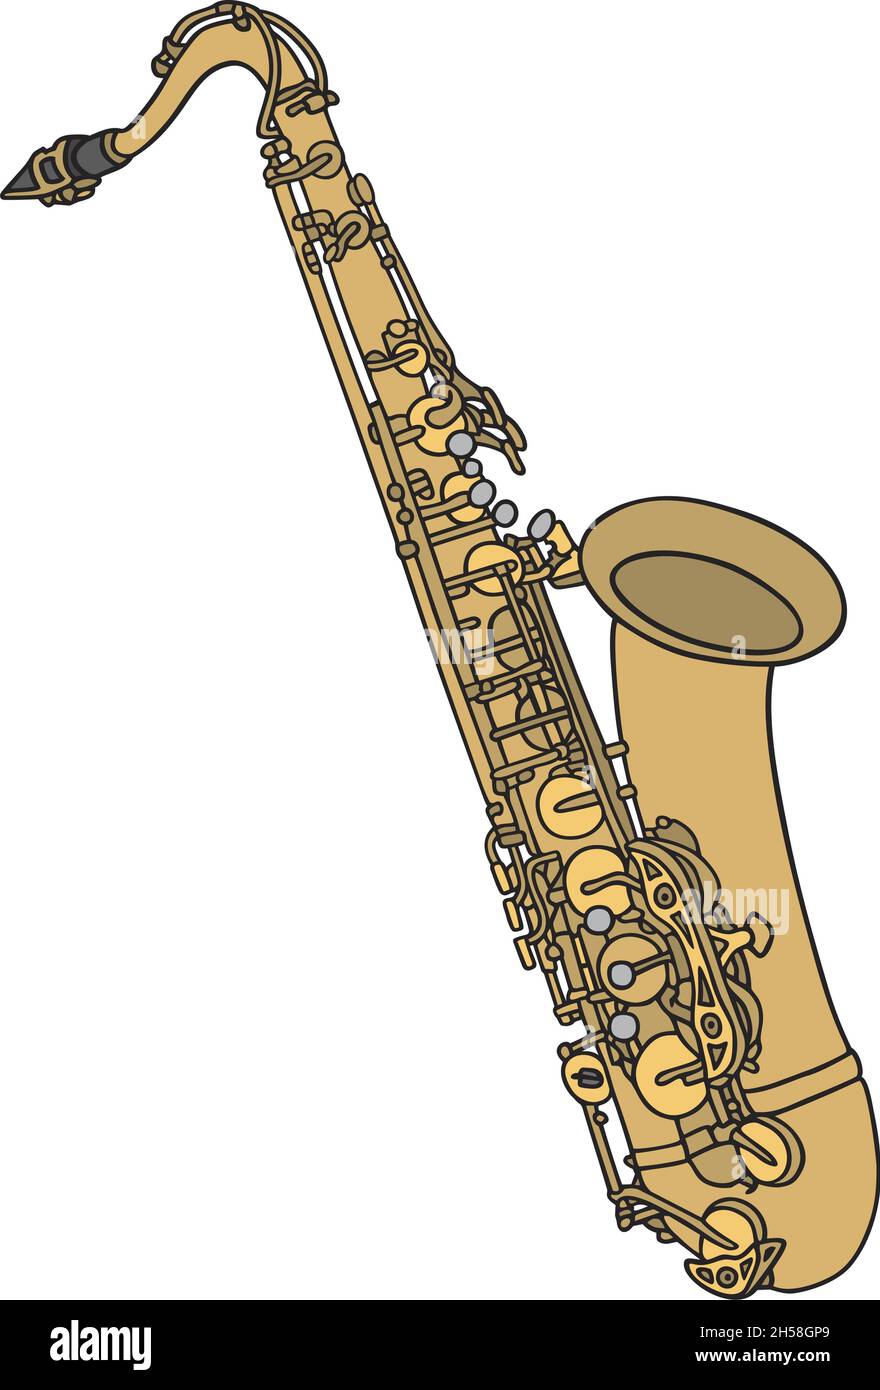 Il disegno a mano vettorizzato di un sassofono Illustrazione Vettoriale